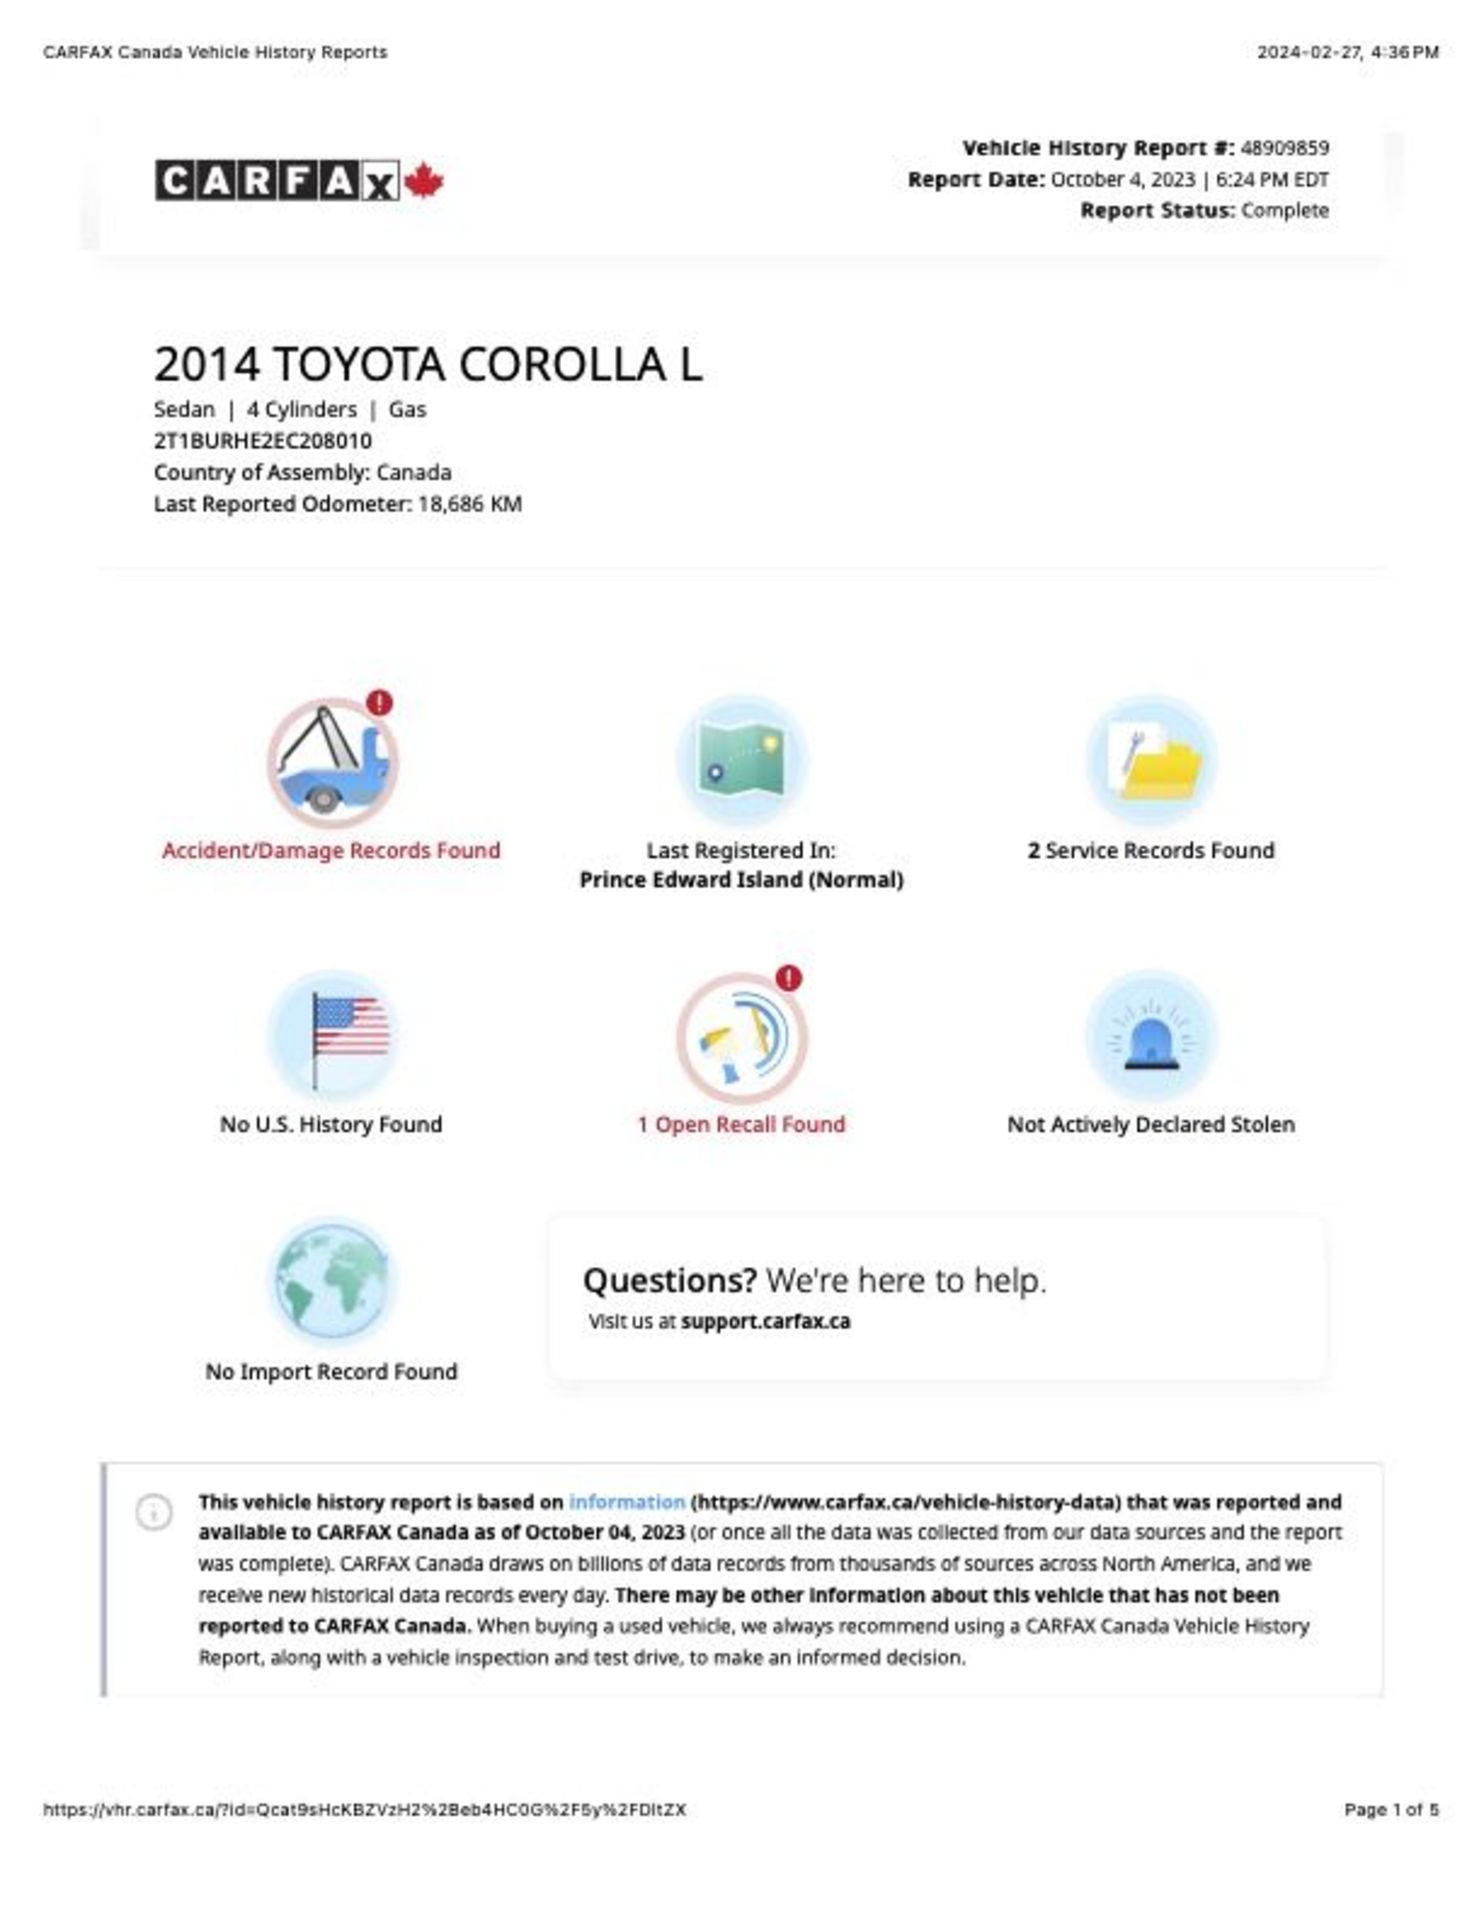 2014 TOYOTA COROLLA - Image 9 of 16